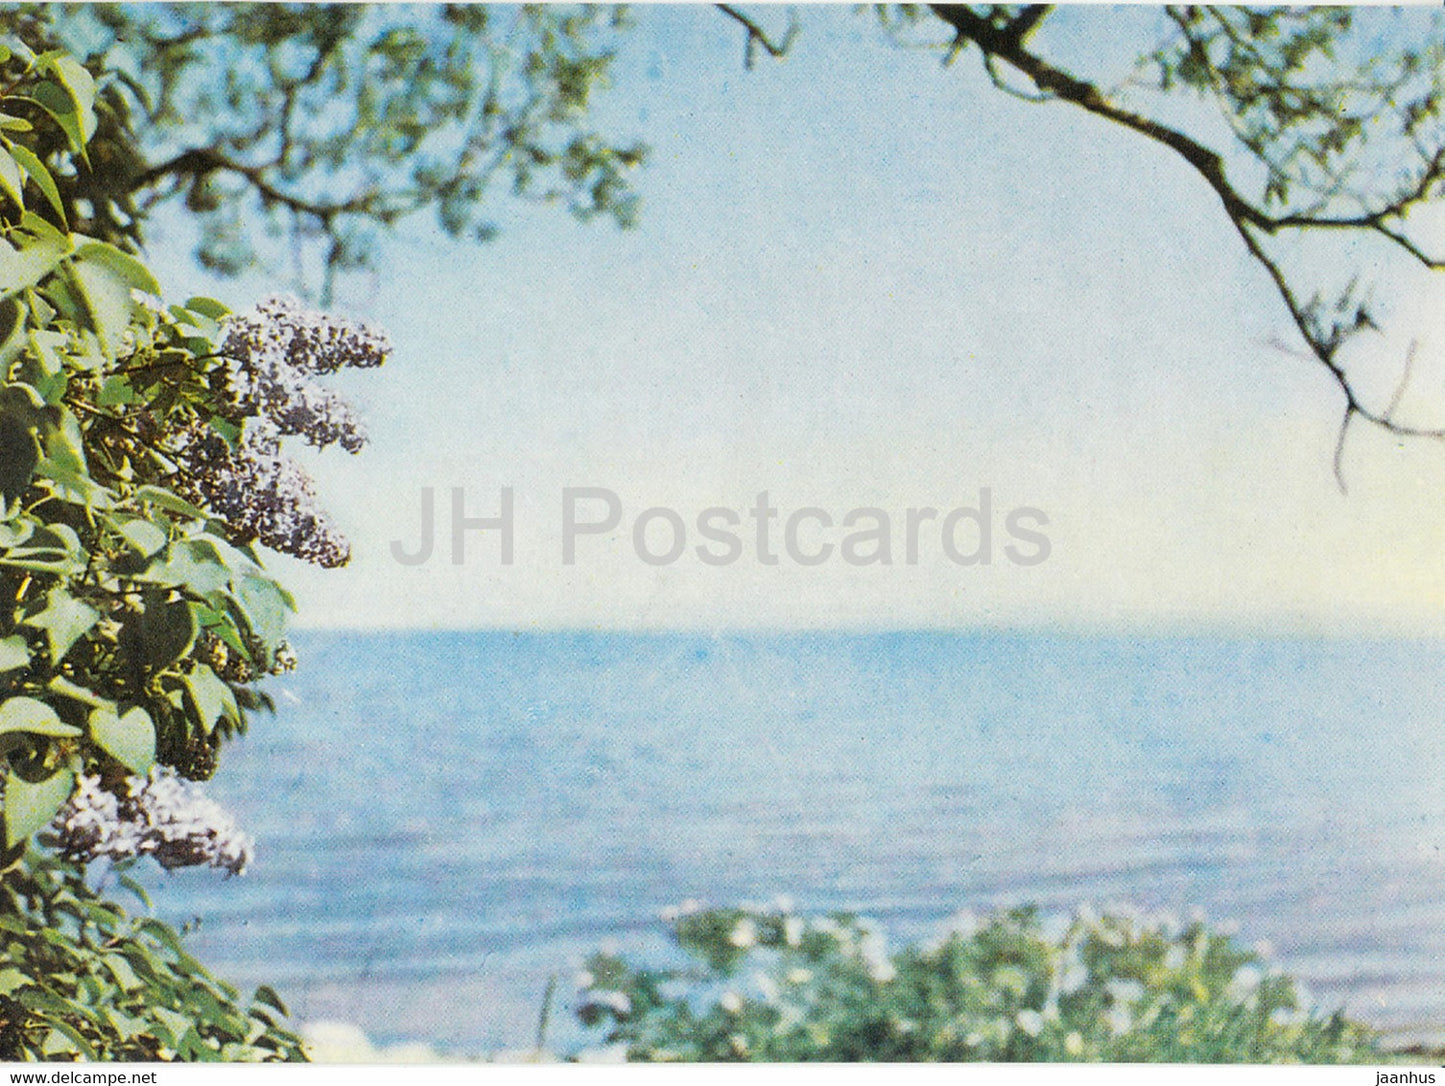 Jurmala - Sea Coast in Engure - Latvia USSR - unused - JH Postcards